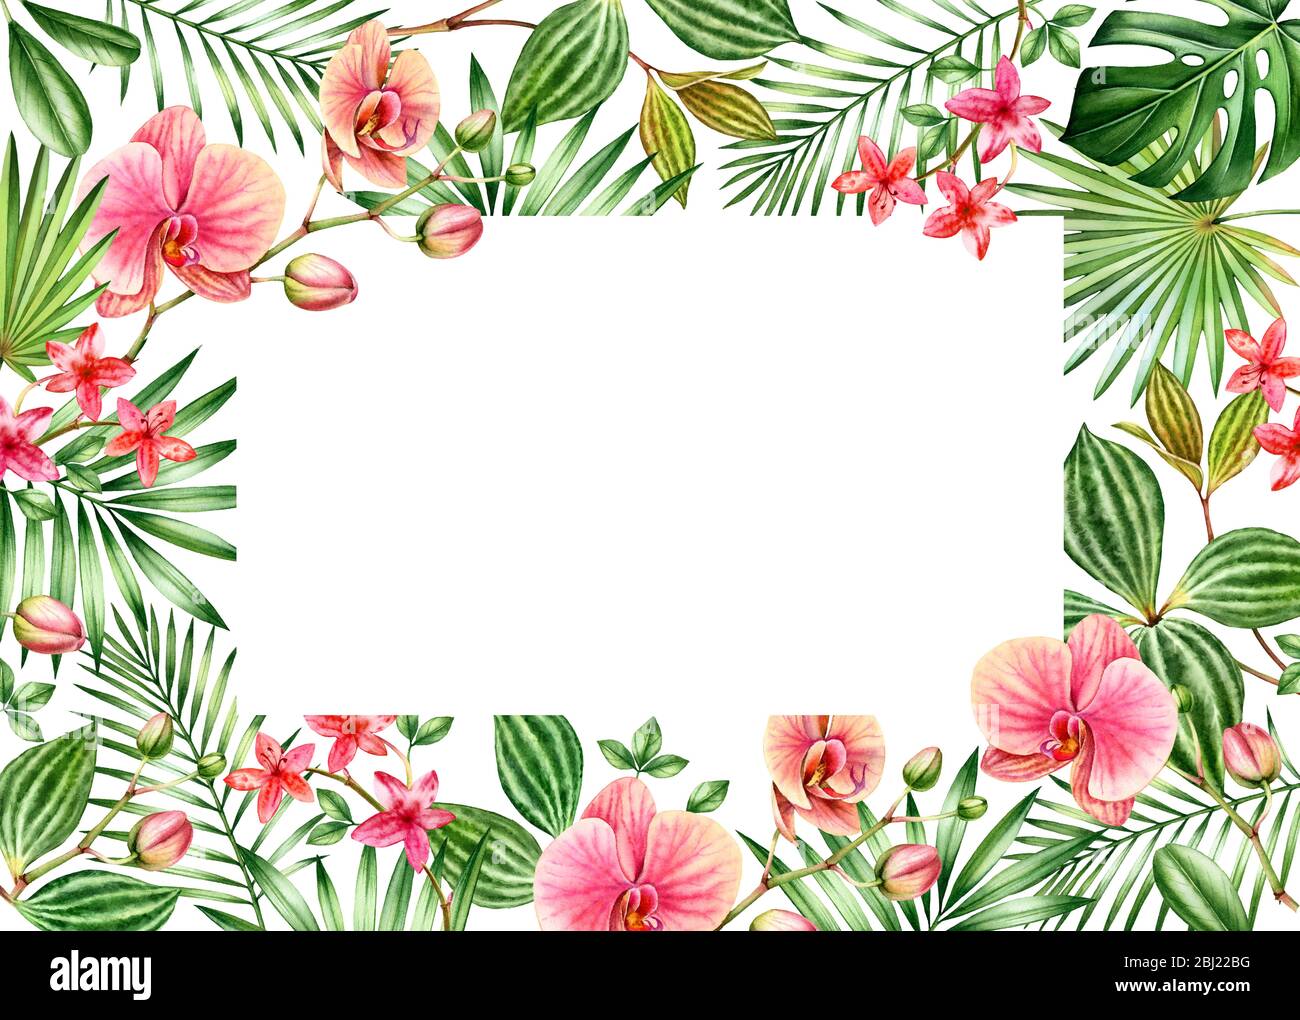 Modèle de carte fleurie aquarelle. Cadre horizontal avec emplacement pour le texte. Grandes fleurs d'orchidées orange et feuilles de palmier. Fond tropical peint à la main Banque D'Images